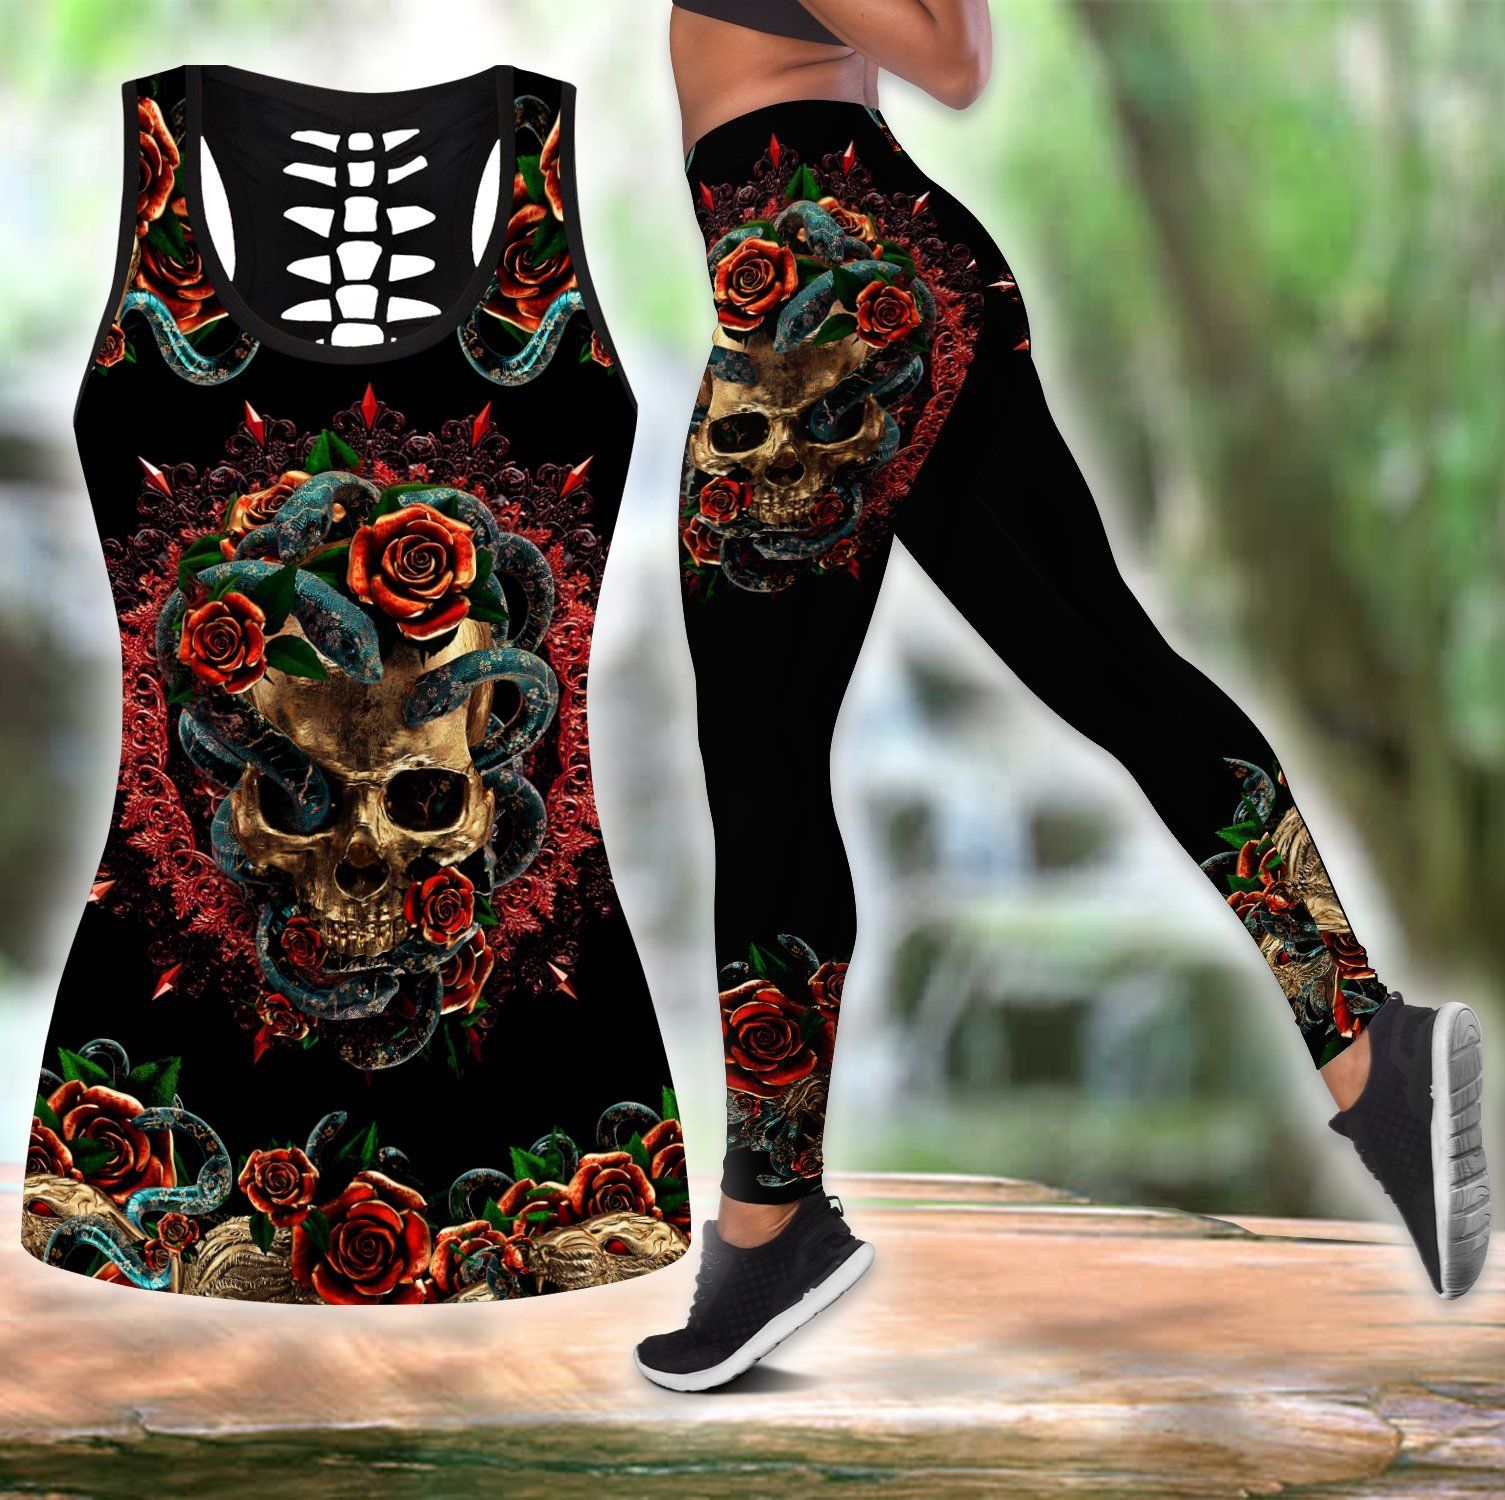 Snake Love Skull 3d all over printed tanktop & legging outfit for women QB06052002